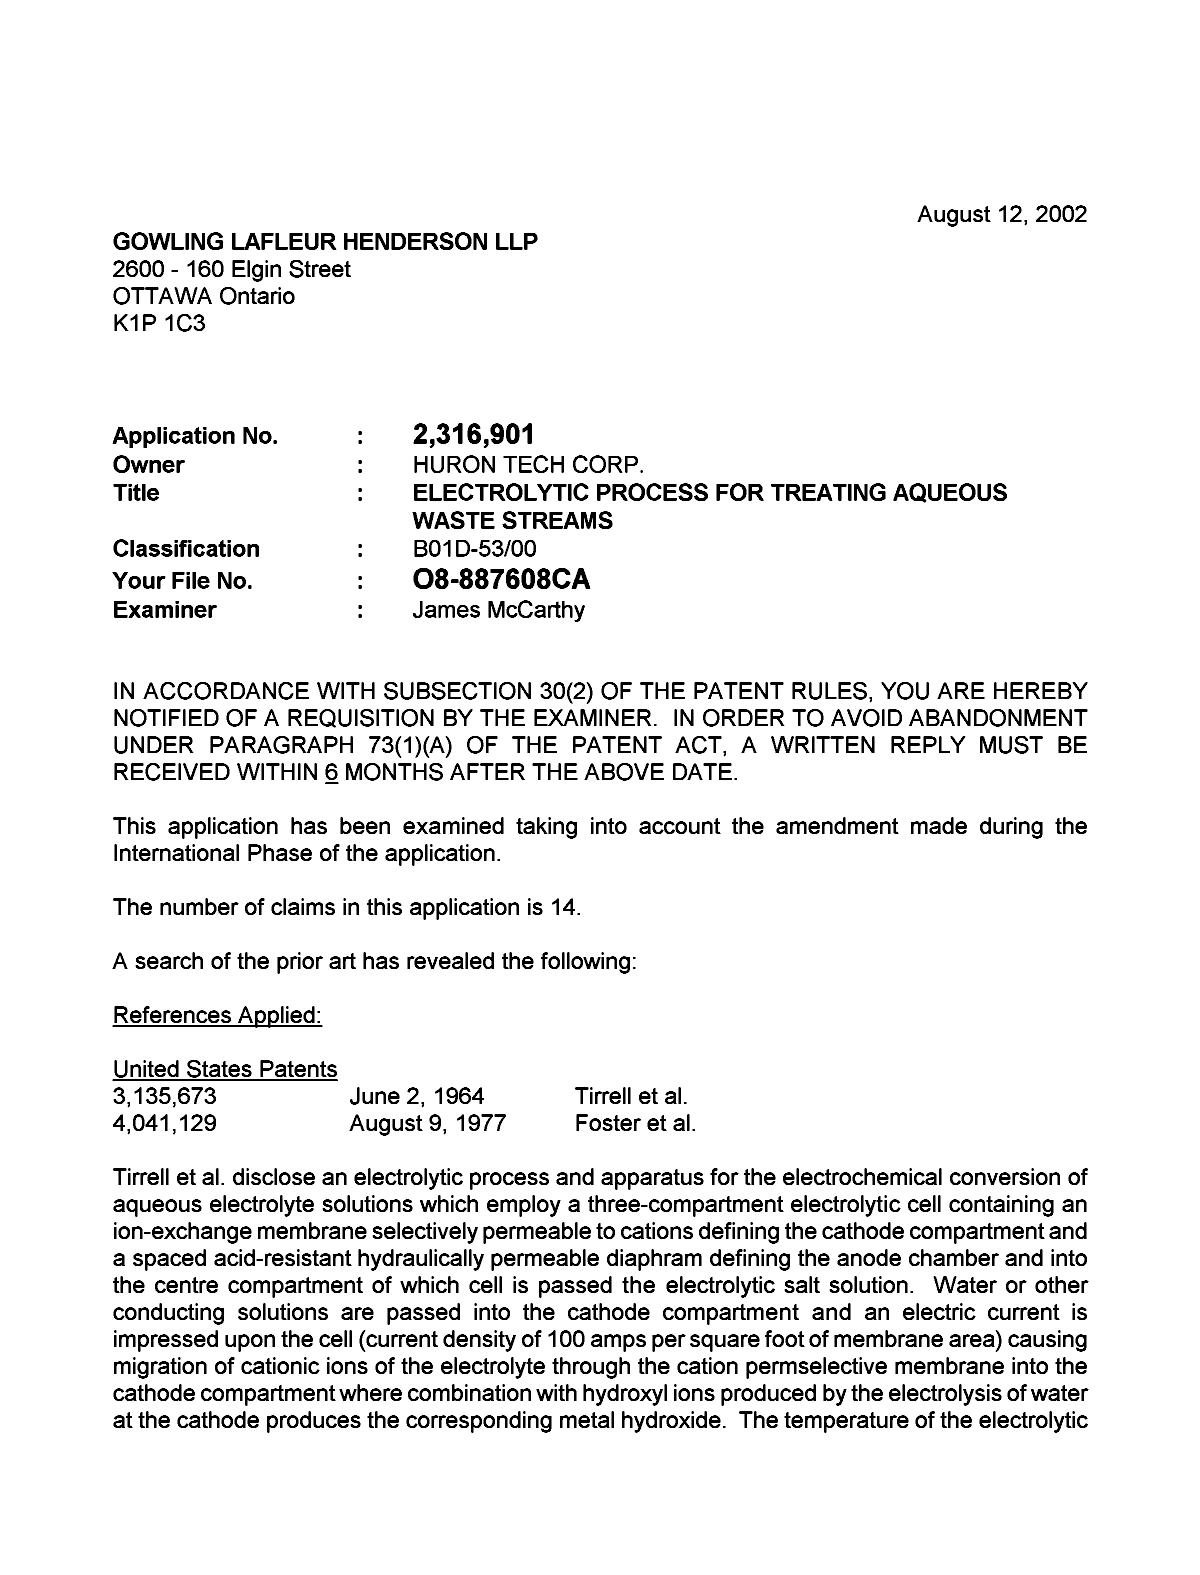 Document de brevet canadien 2316901. Poursuite-Amendment 20020812. Image 1 de 4